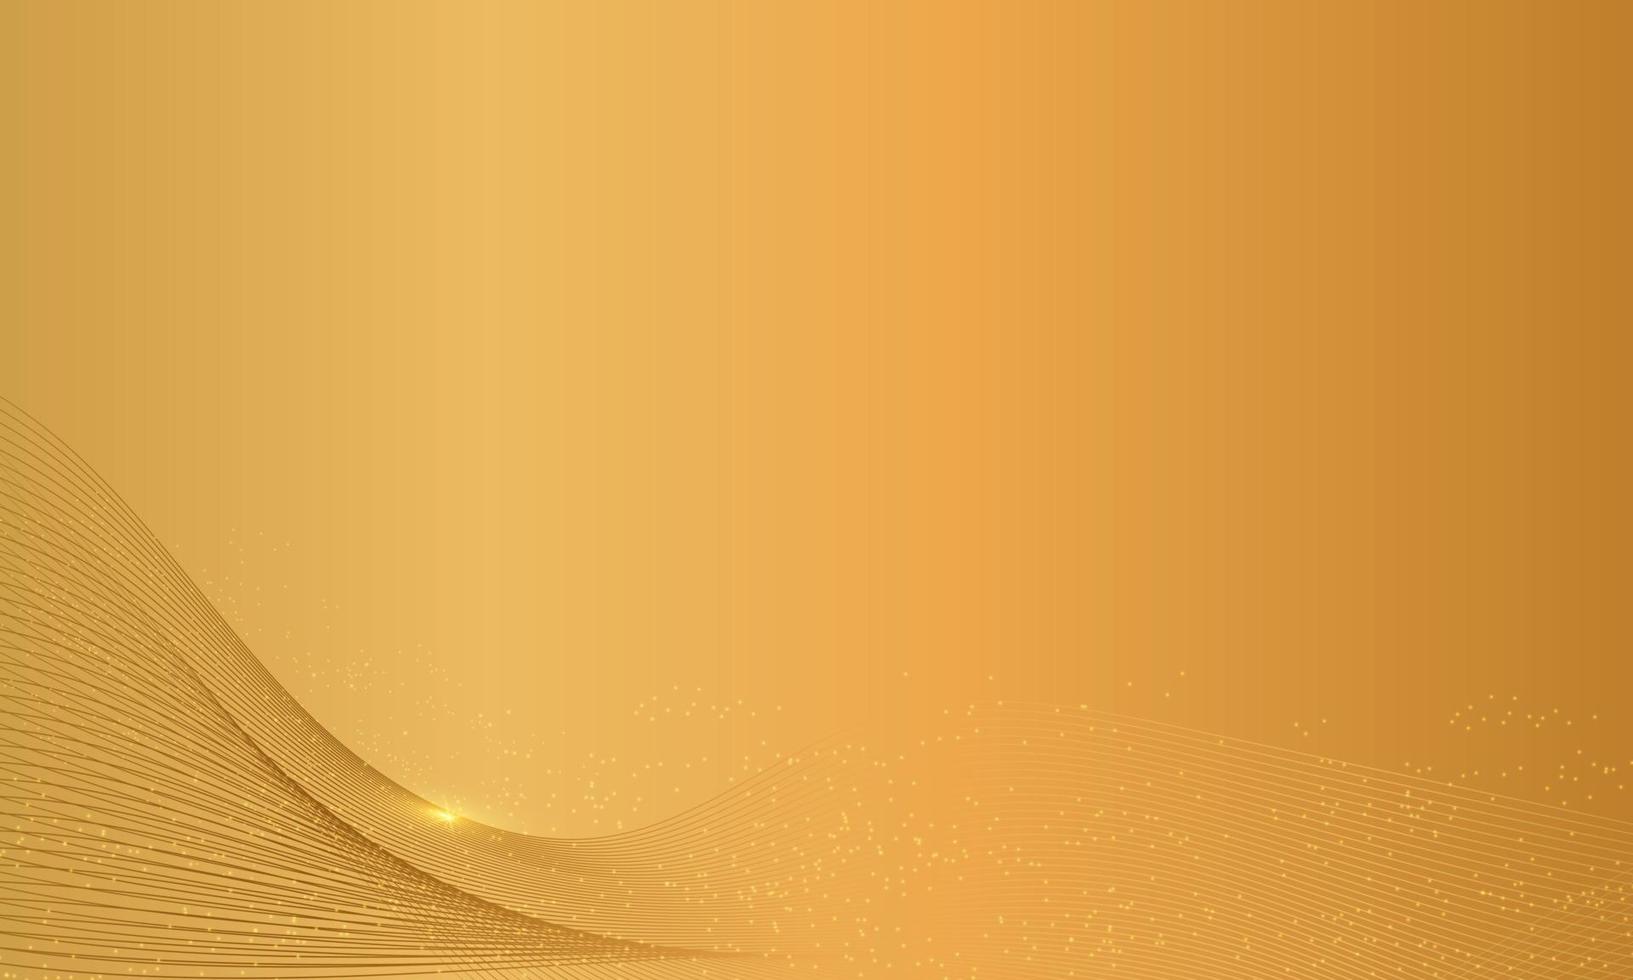 abstracte gouden achtergrond met gouden element en textuur, luxe achtergrond concept. geschikt voor verschillende achtergrondontwerp, sjabloon, banner, poster, presentatie, enz. vector